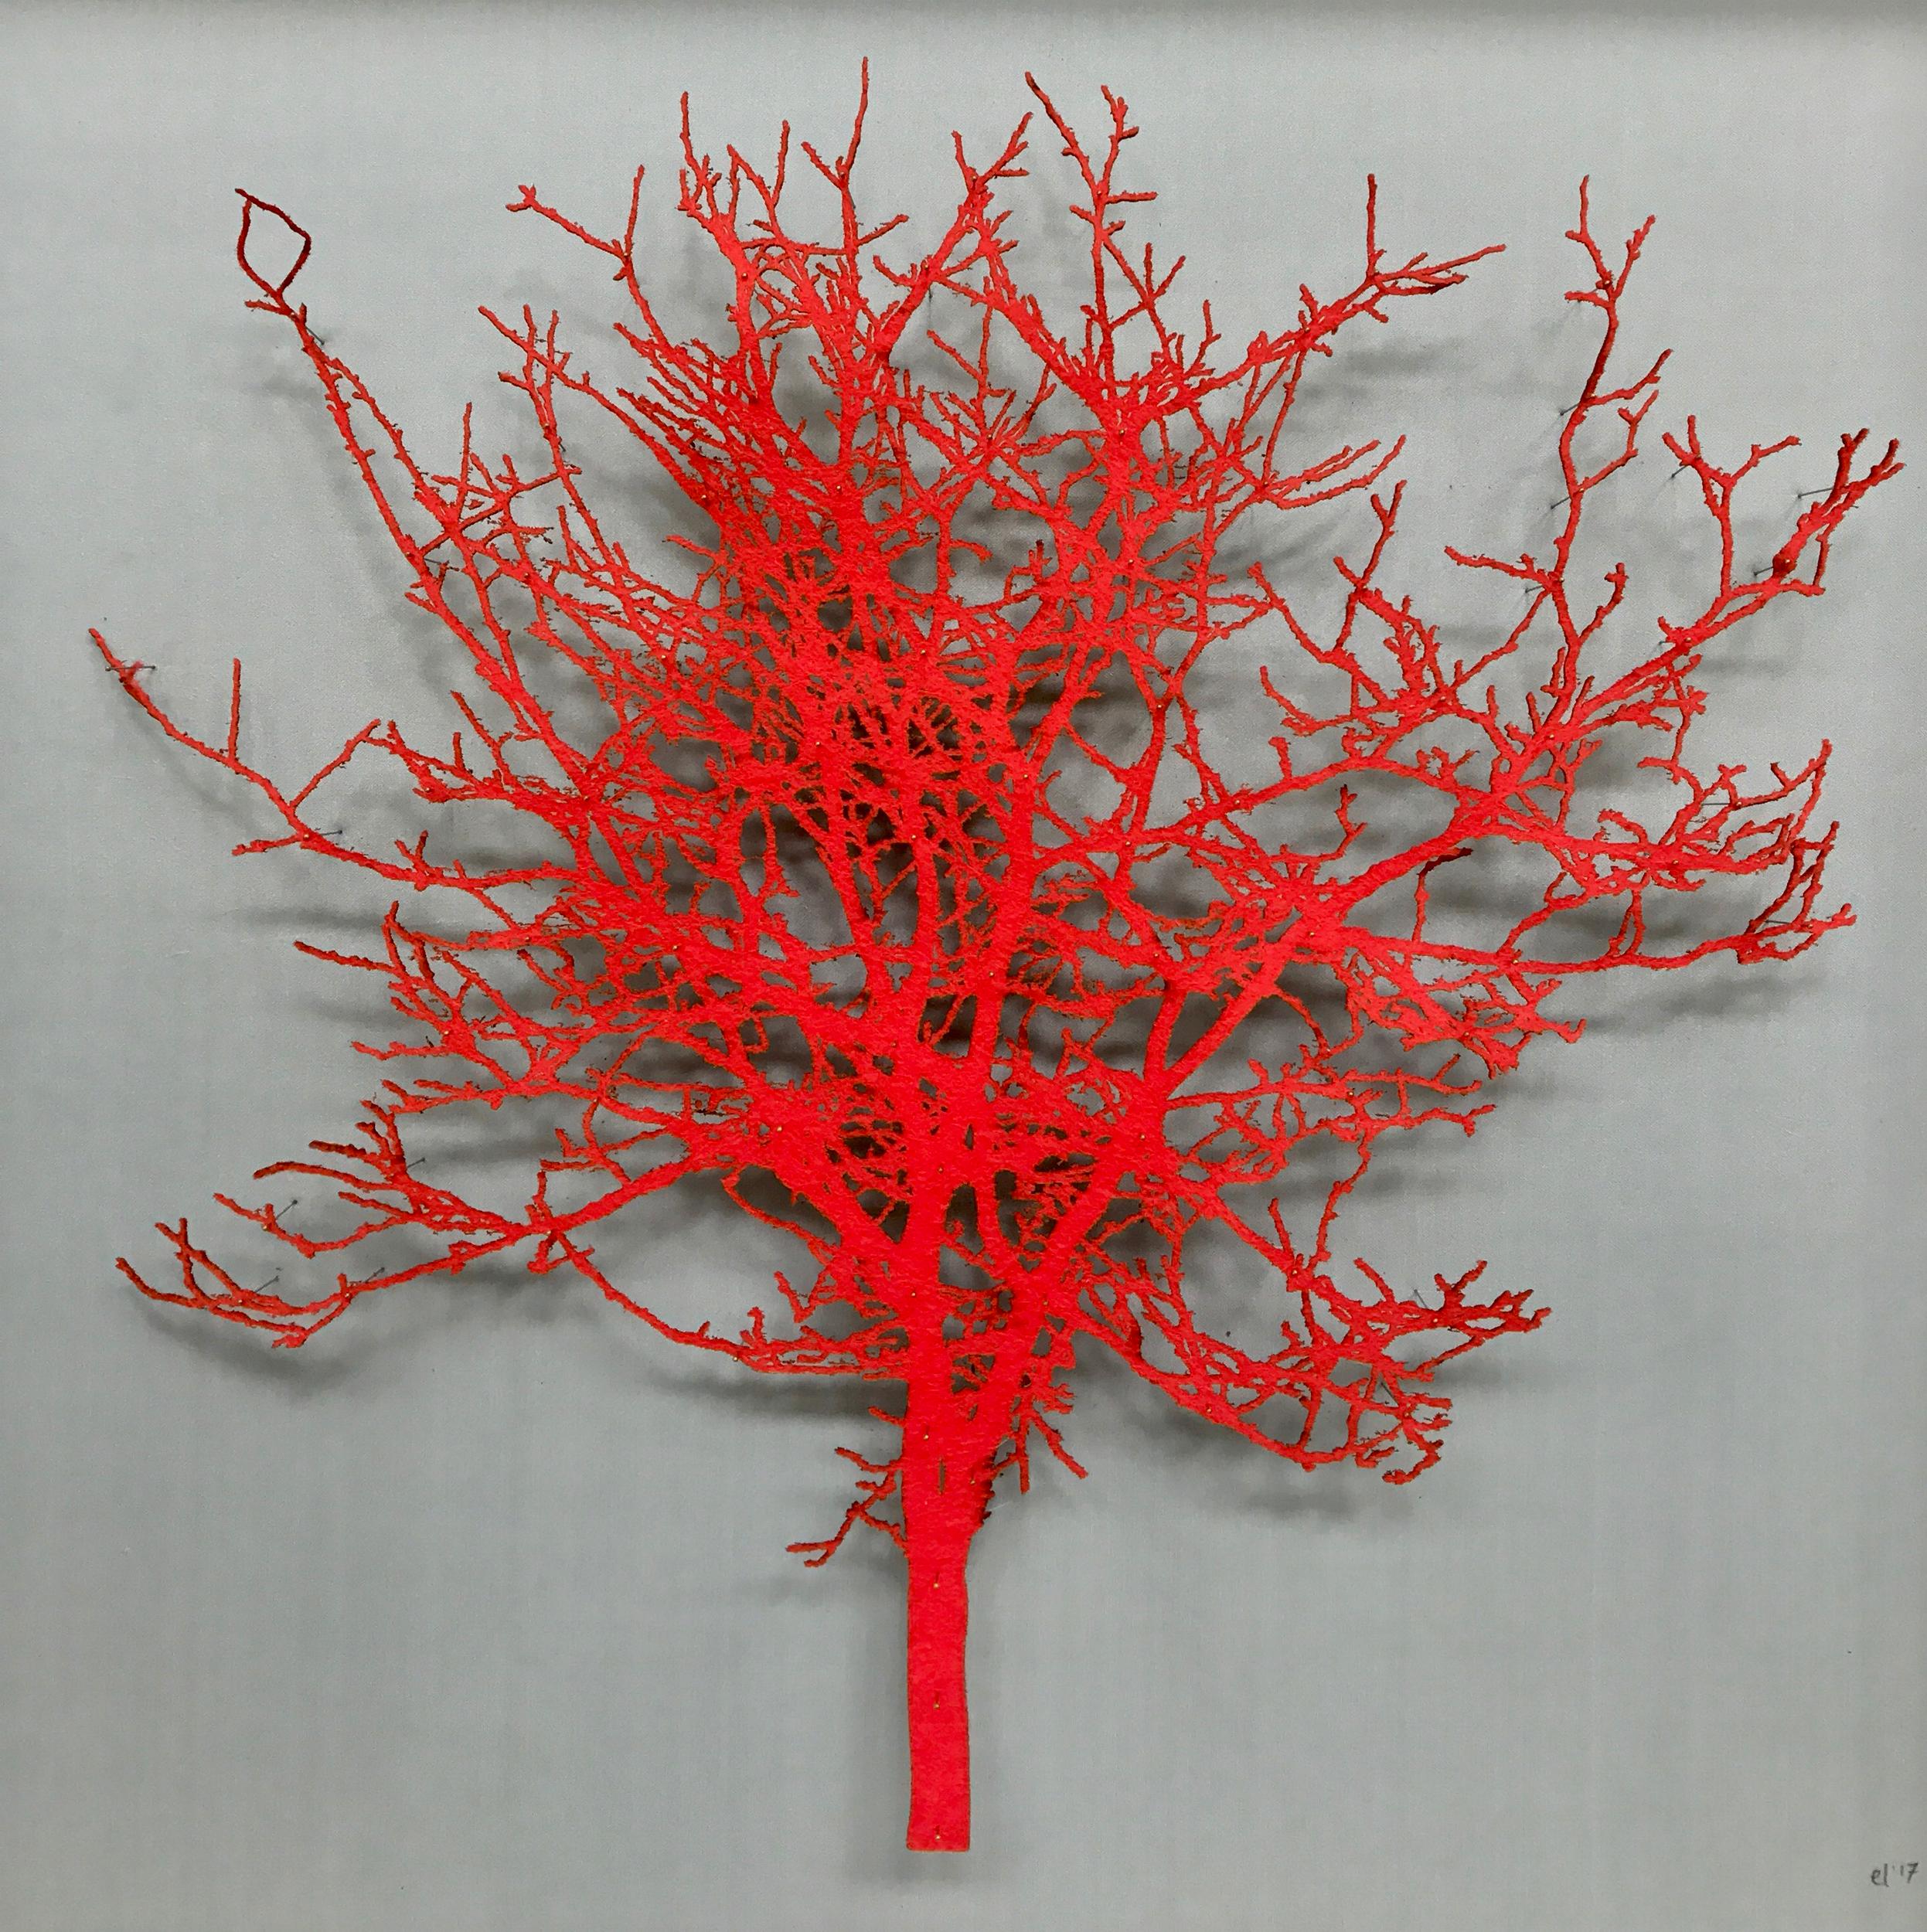 Felt Hawthorn - œuvre d'art mixte contemporaine encadrée et émaillée au laser d'un arbre rouge